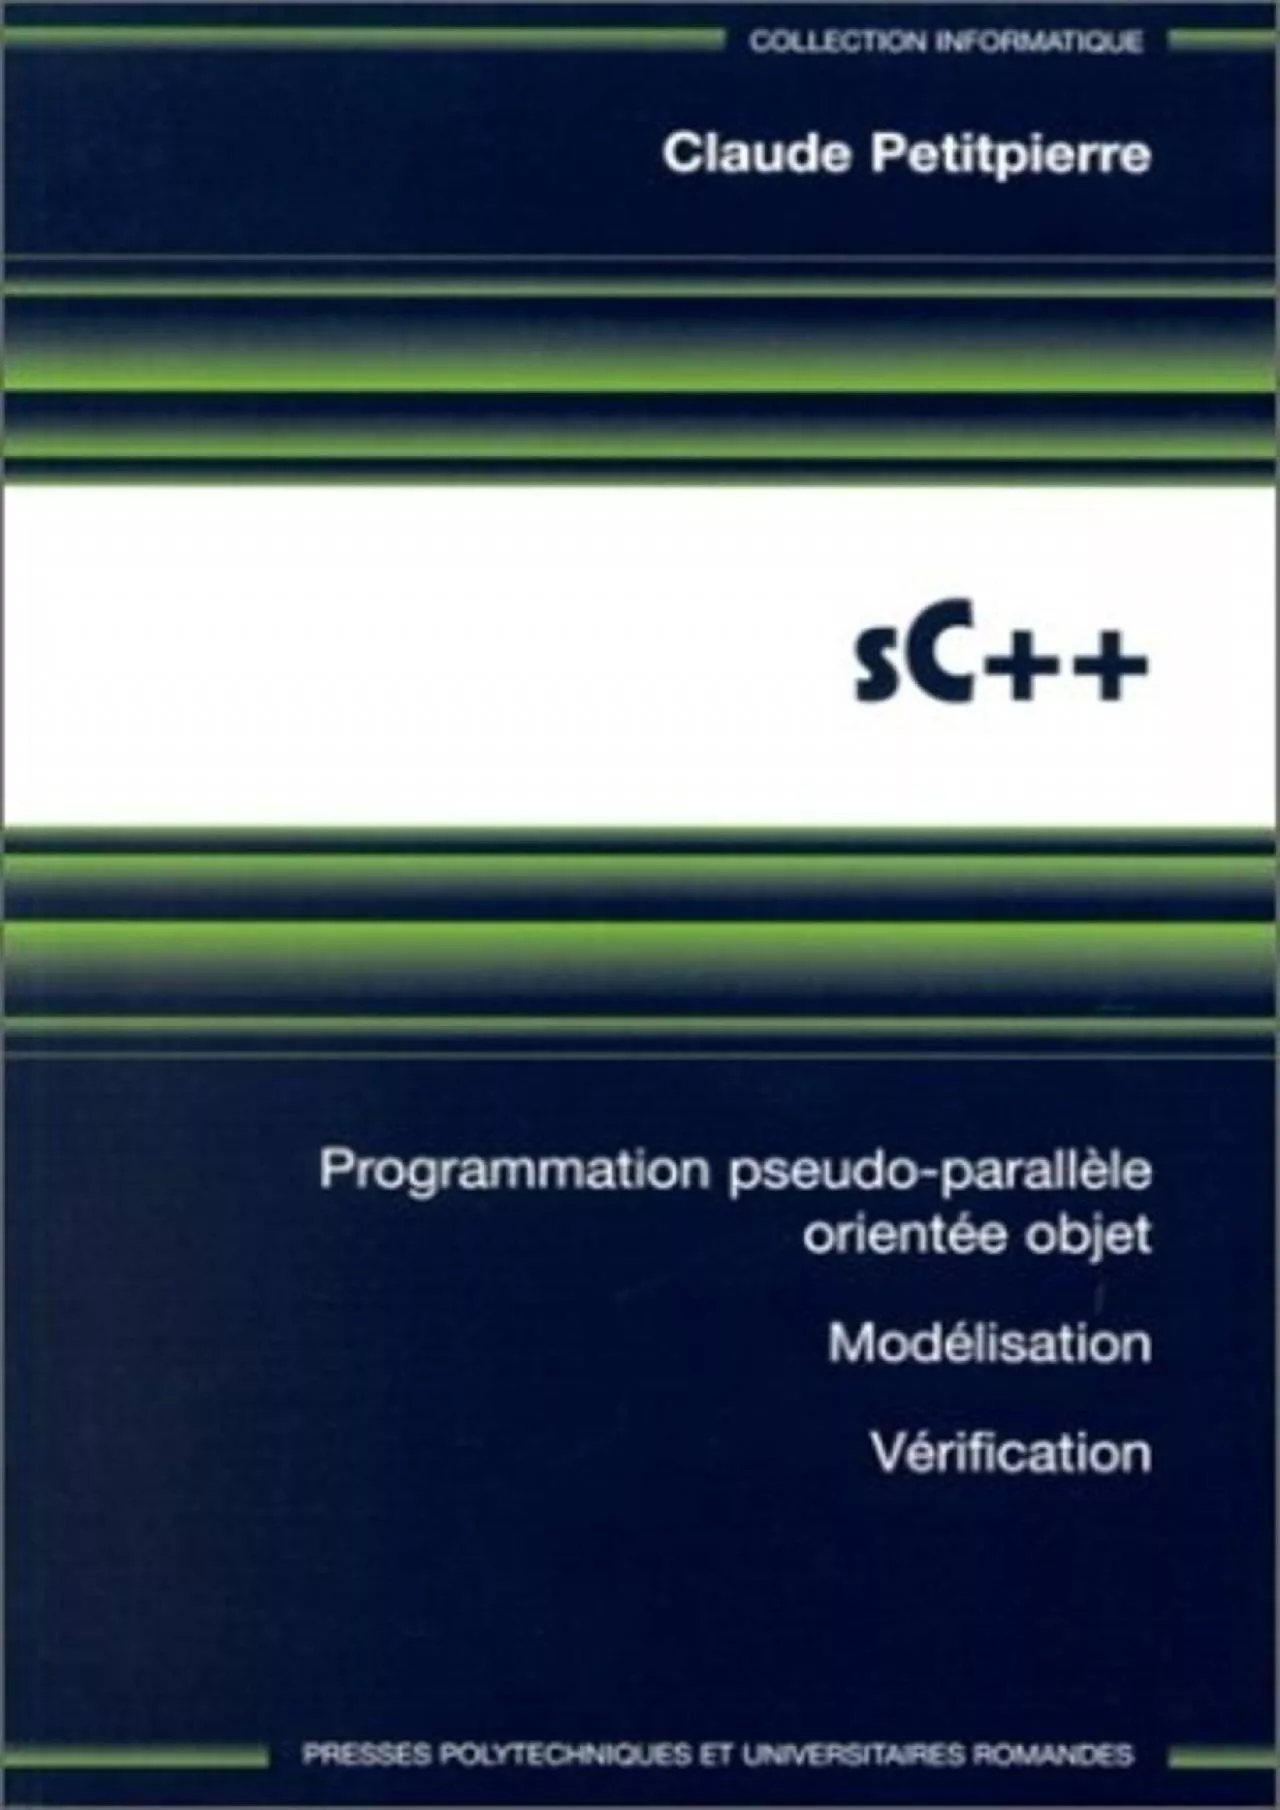 [READING BOOK]-SC++. Programmation pseudo-parallèle orientée objet, modélisation, vérification,